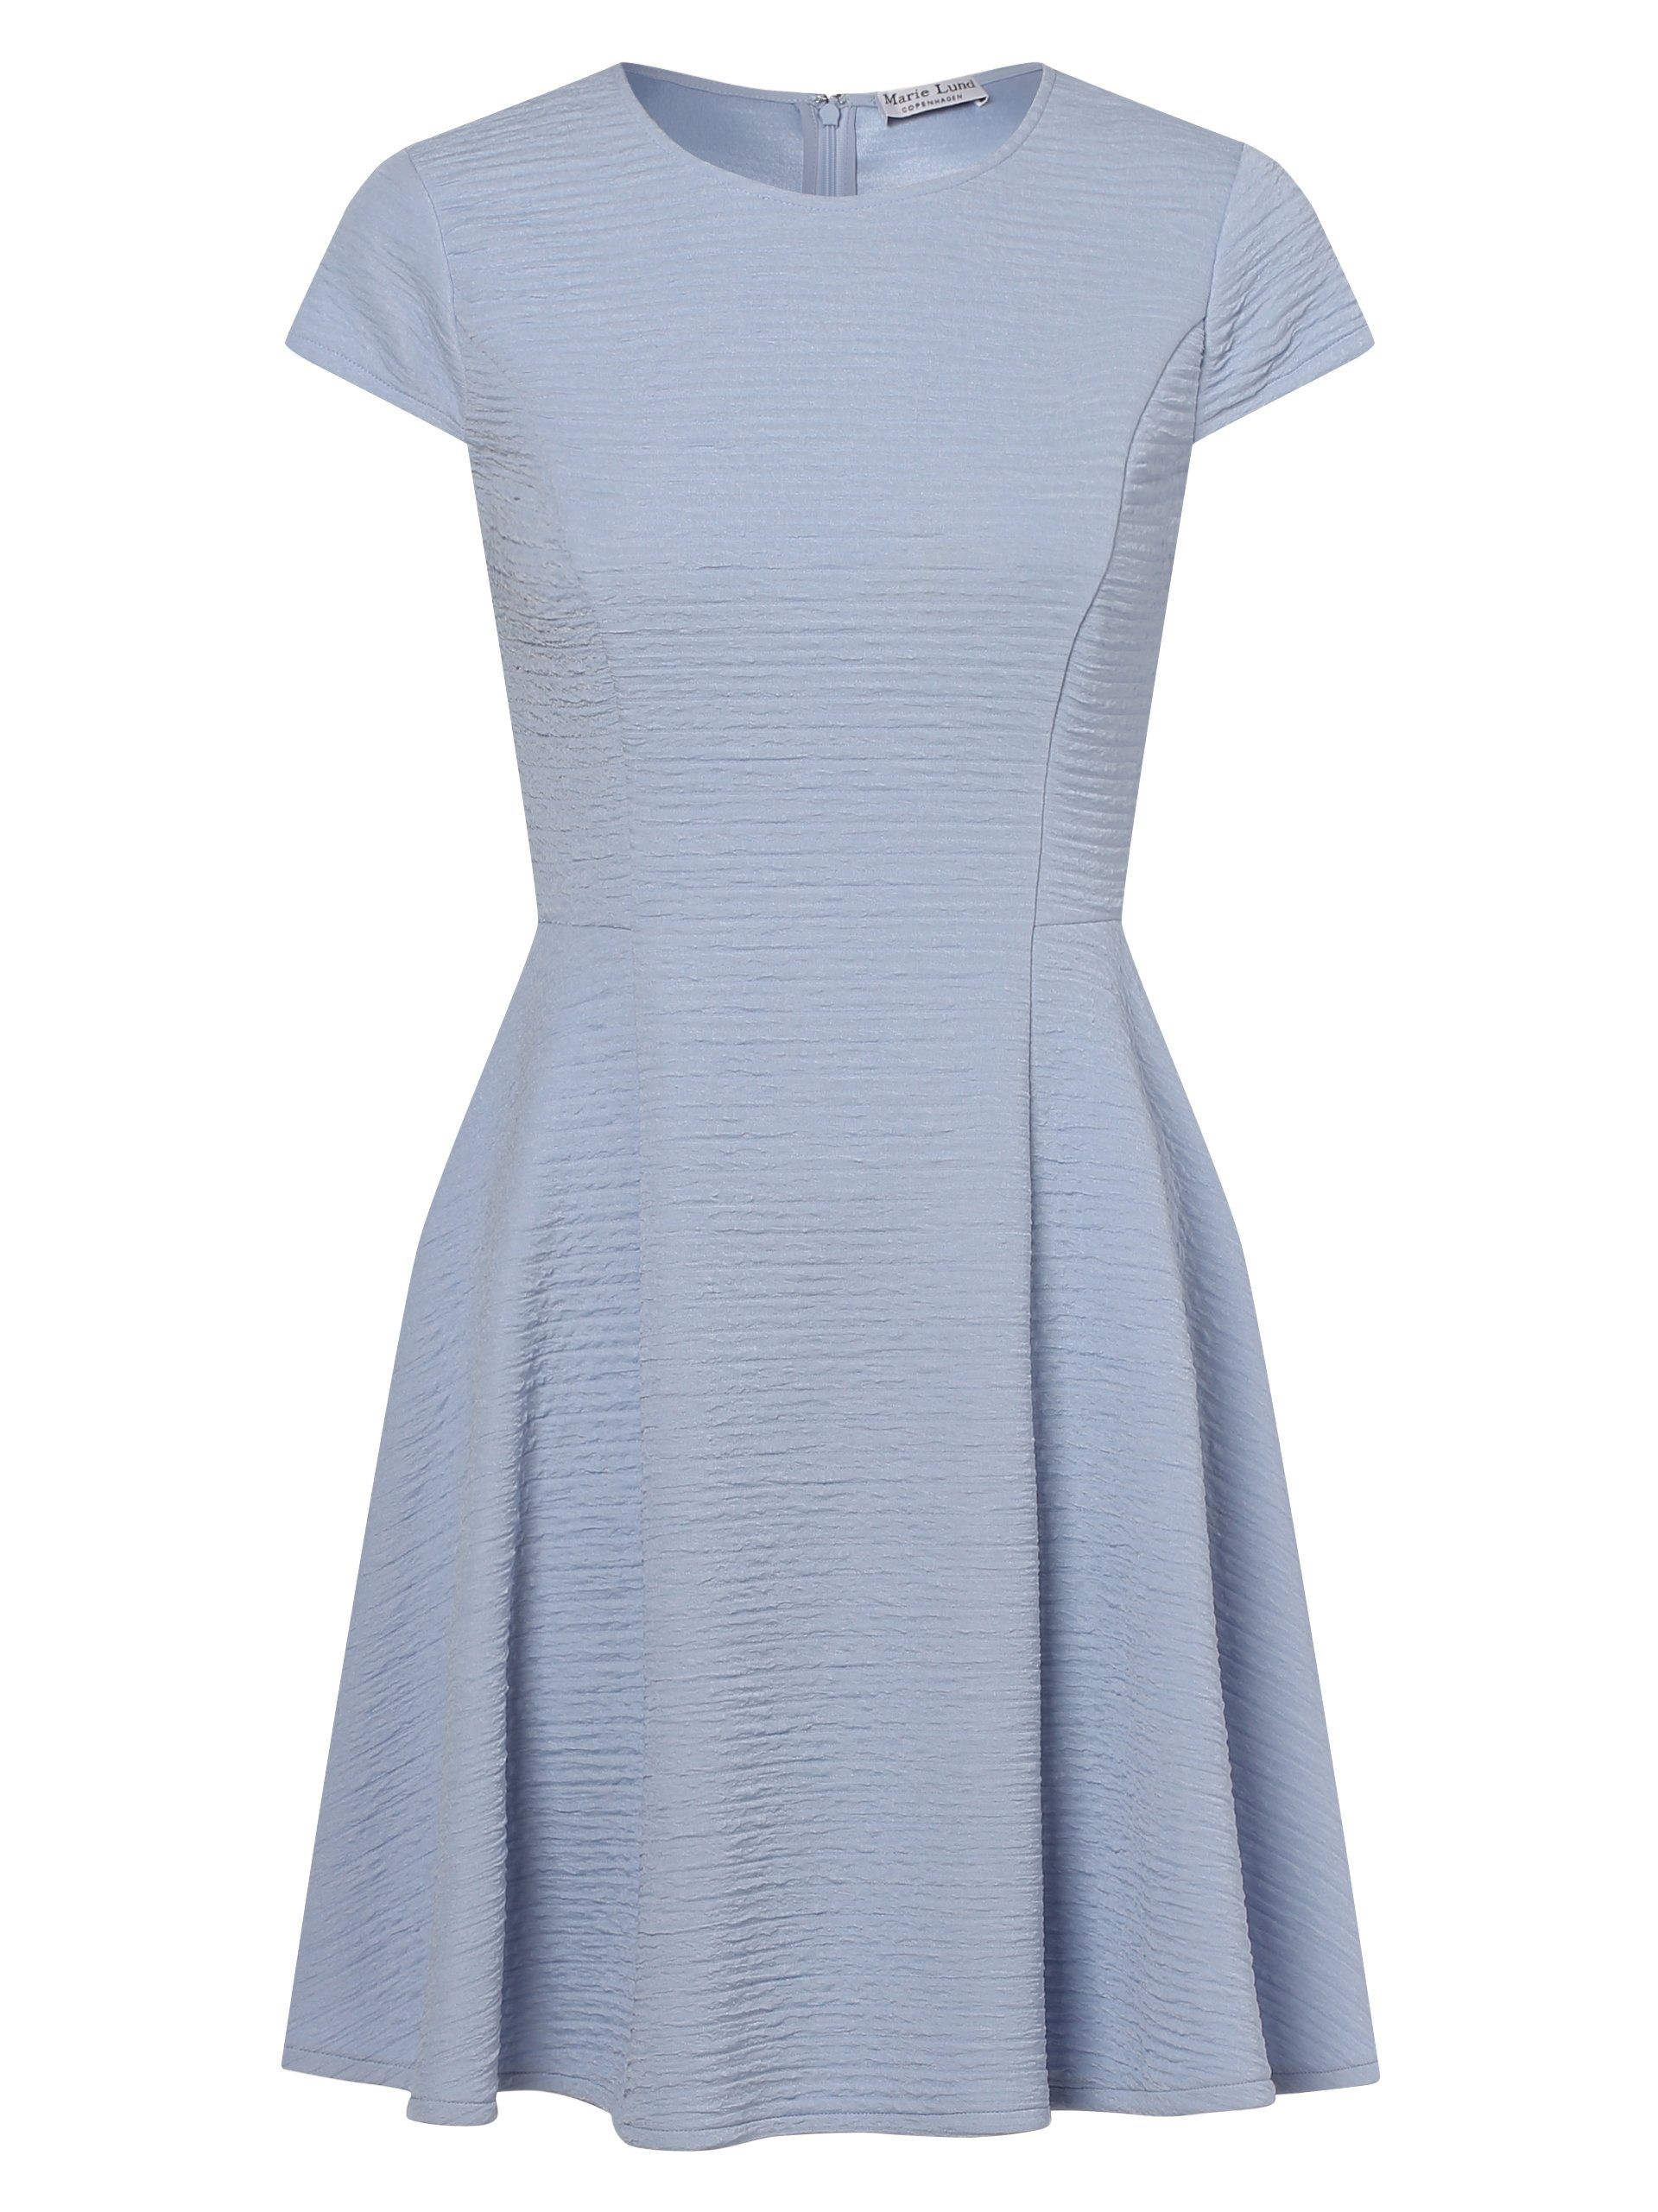 Günstiger Verkauf Marie Lund A-Linien-Kleid hellblau